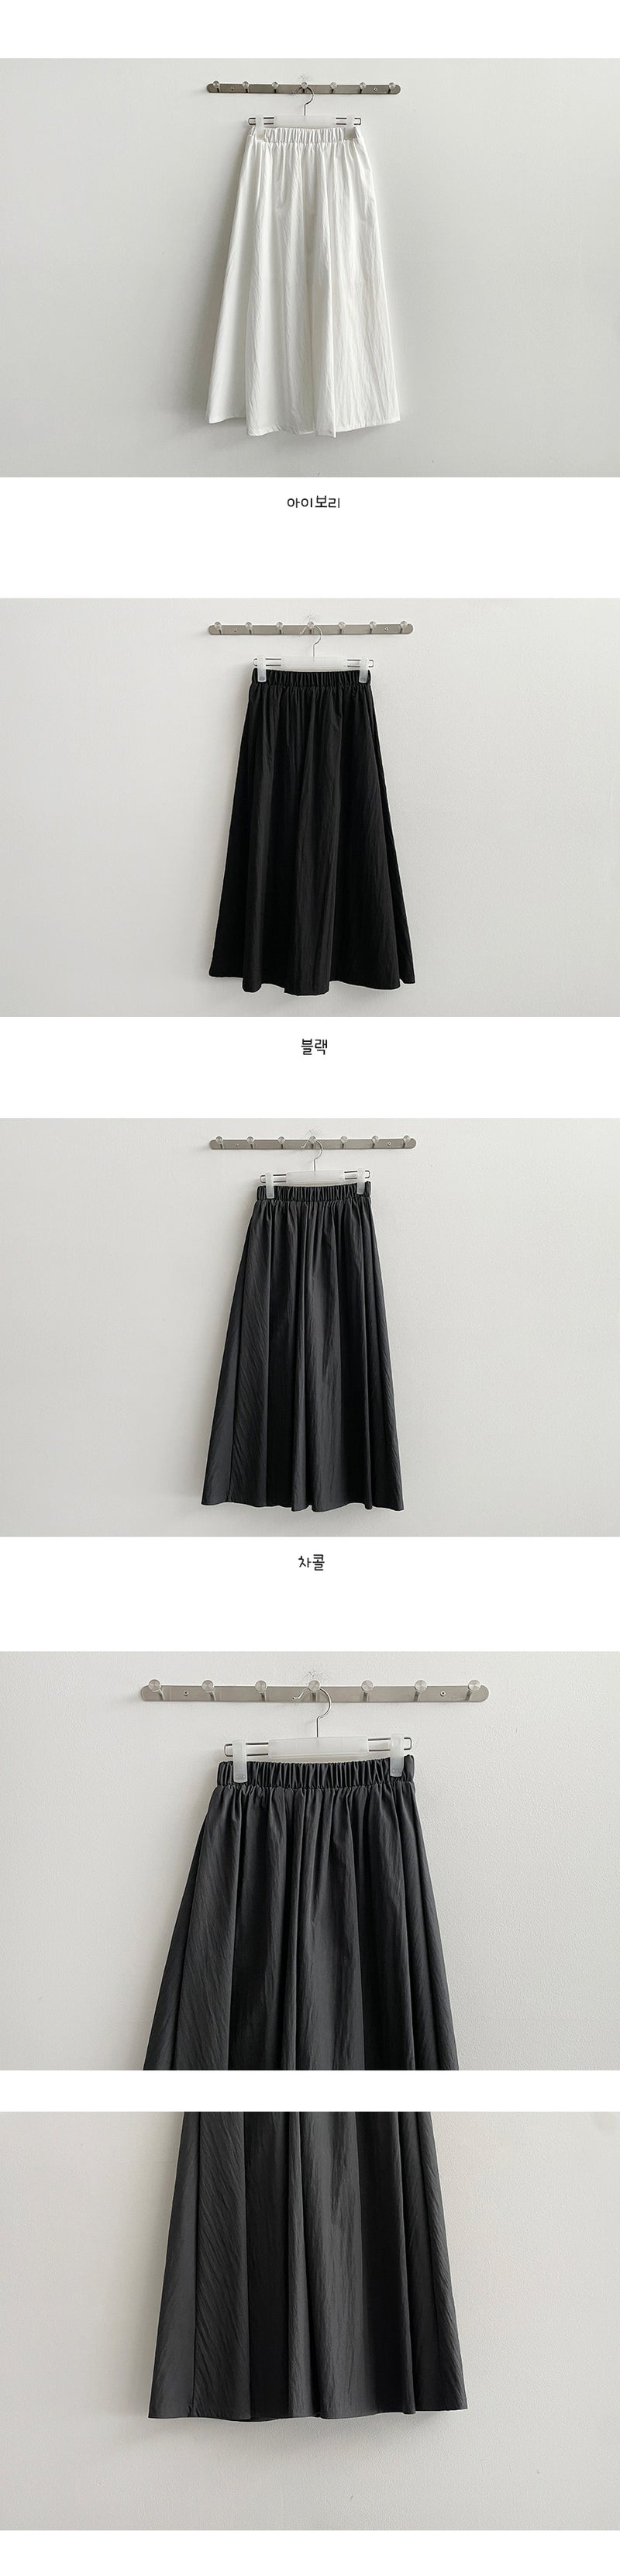 Hicknylon flare long skirt